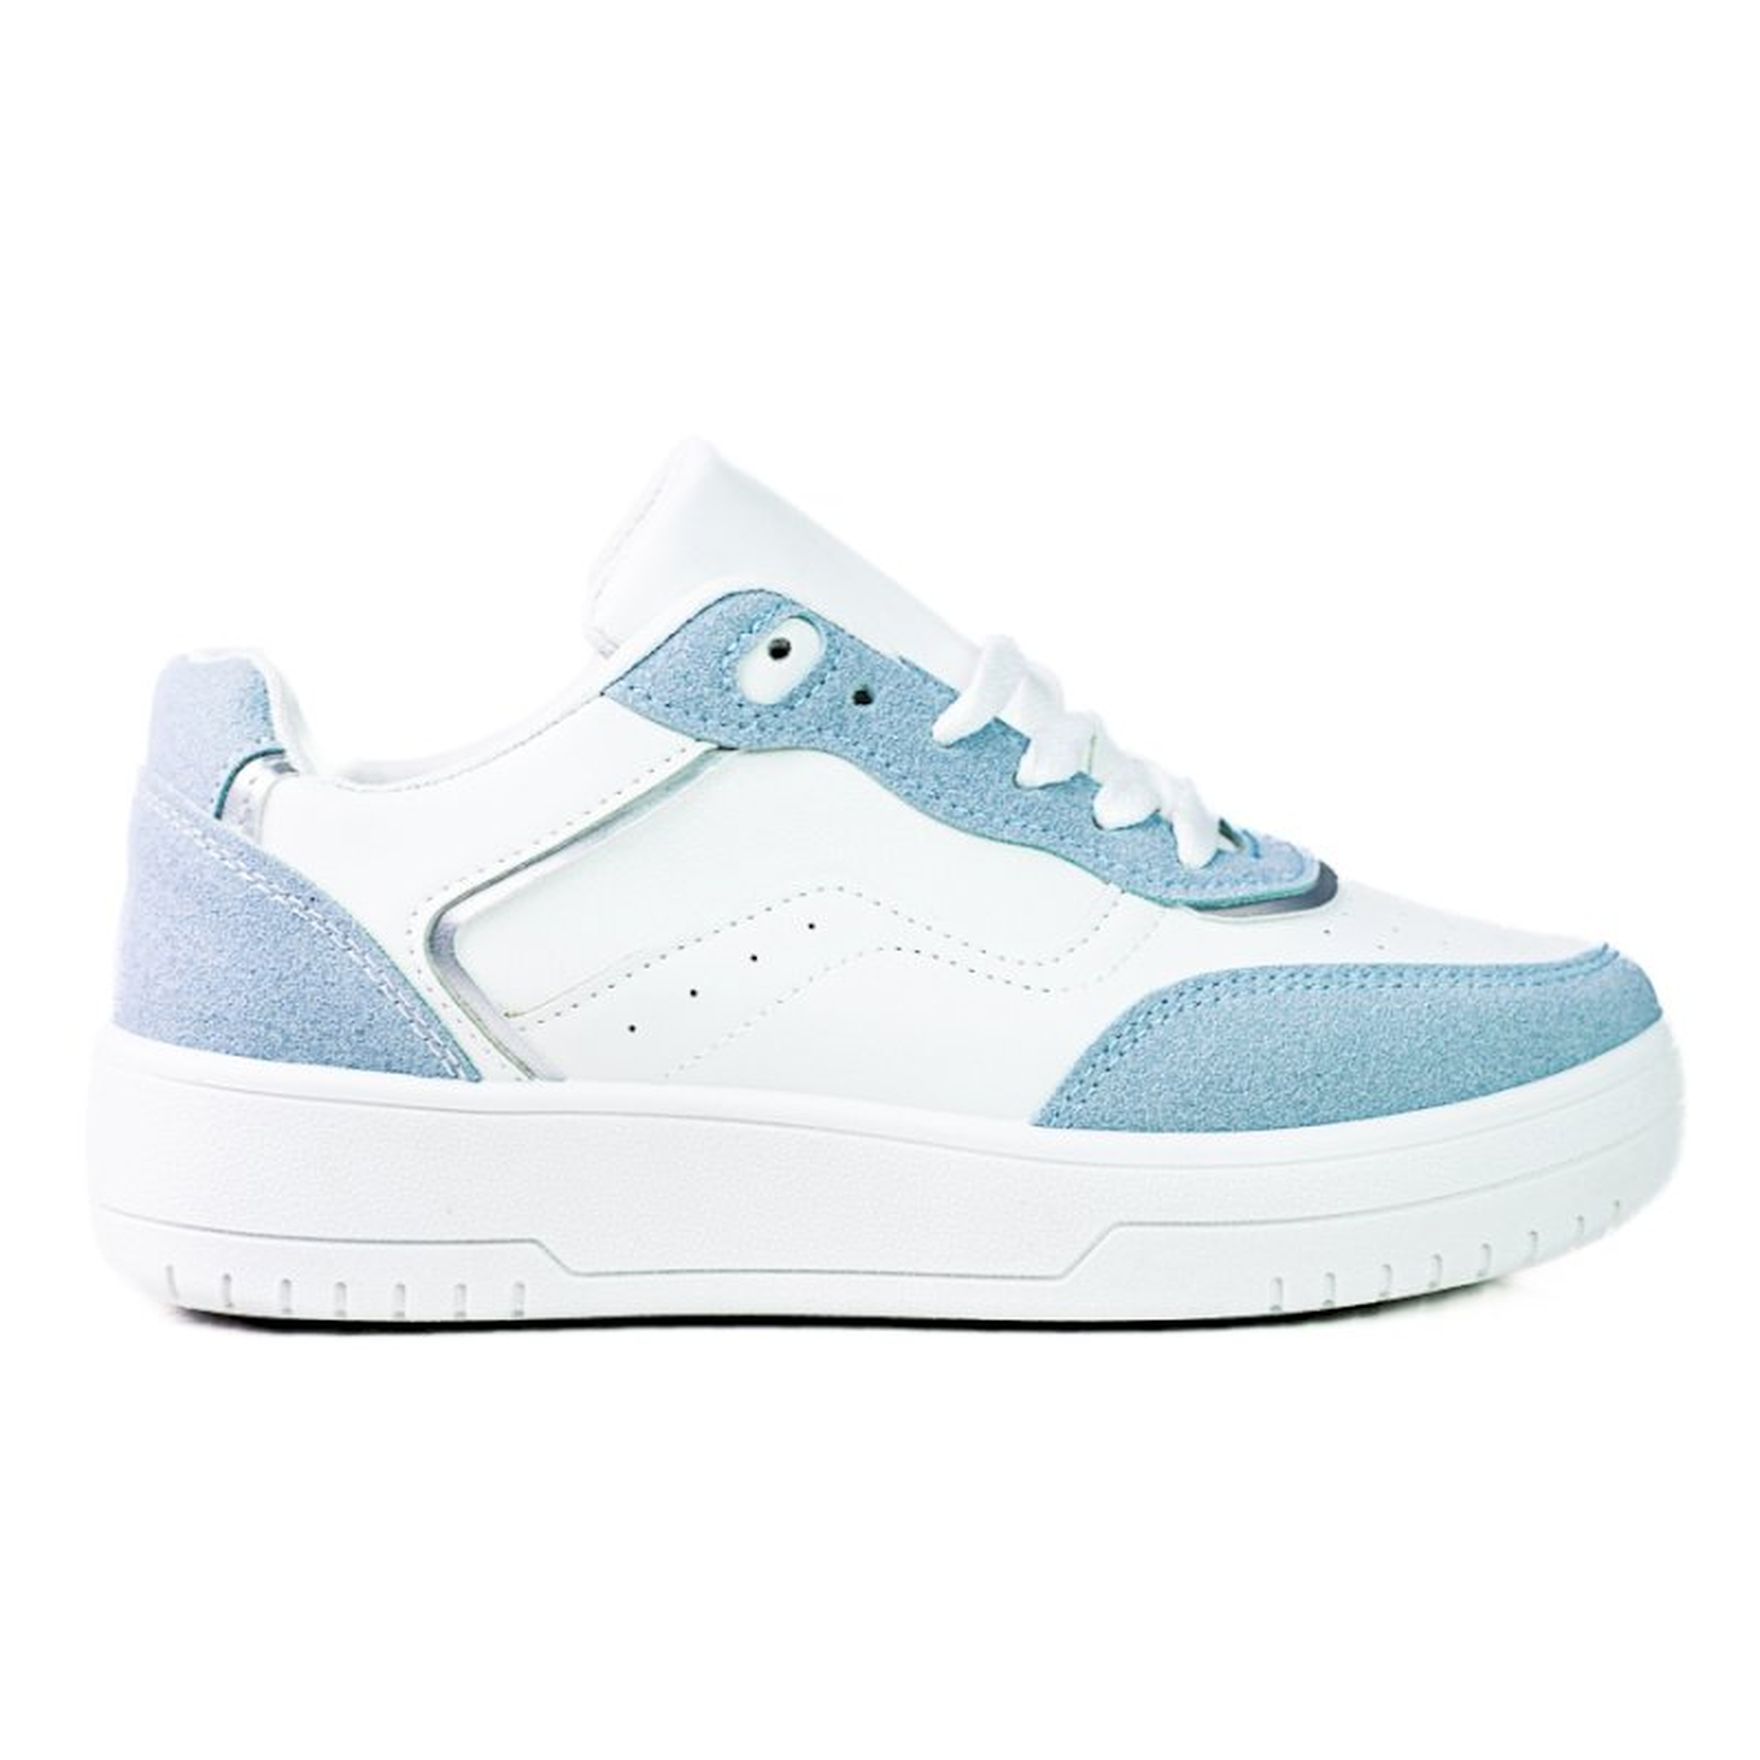 Modne sportowe buty damskie Shelovet na białej platformie niebieskie